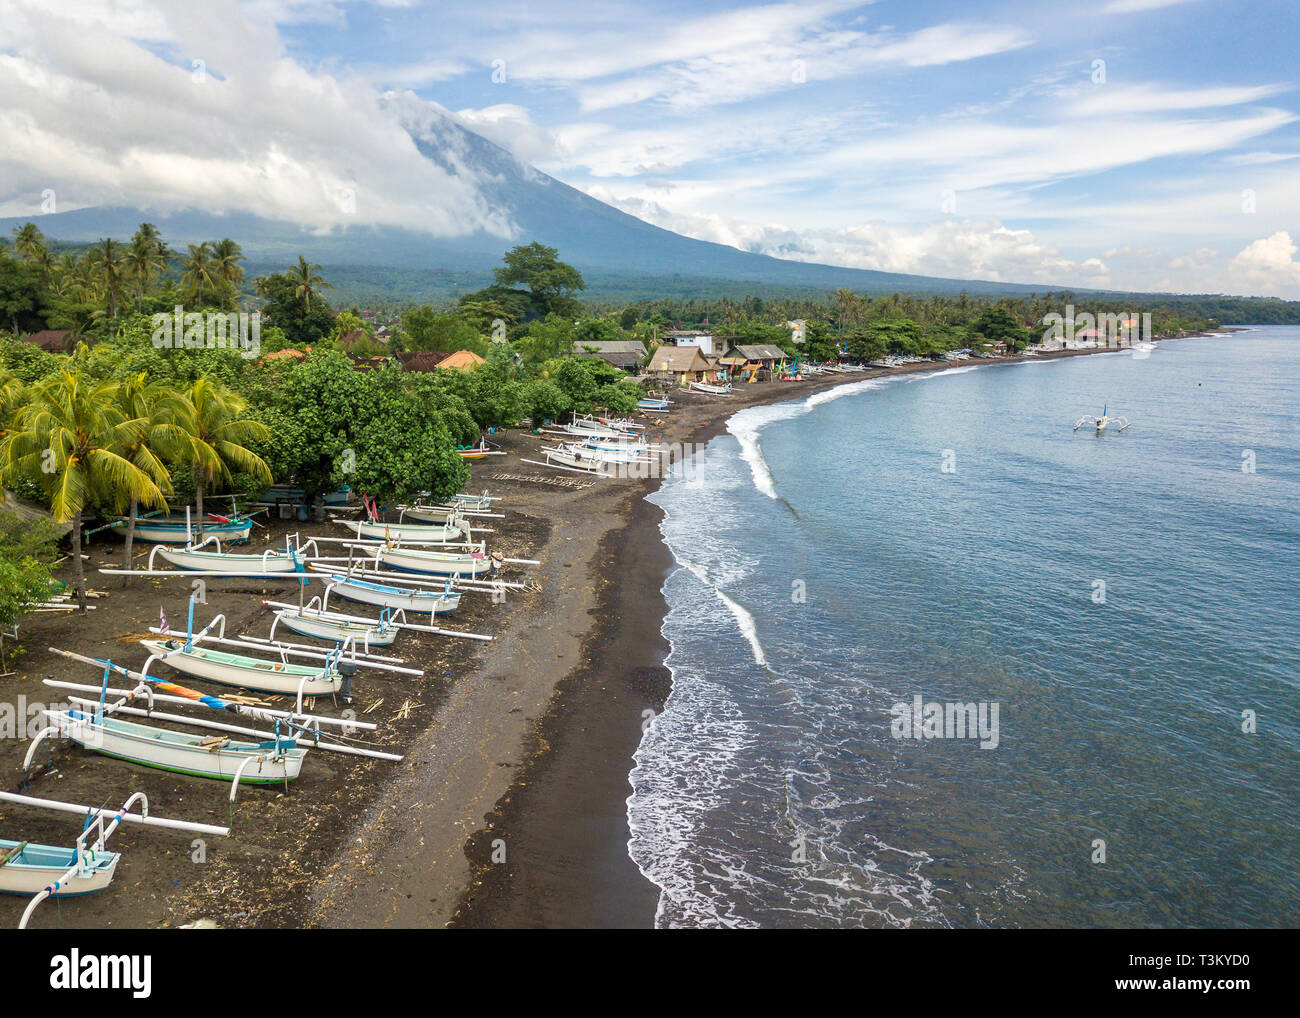 Vista aerea della Spiaggia di Amed in Bali, Indonesia. Tradizionali barche da pesca chiamato jukung sulla spiaggia di sabbia nera e Gunung Agung vulcano nel backgroun Foto Stock